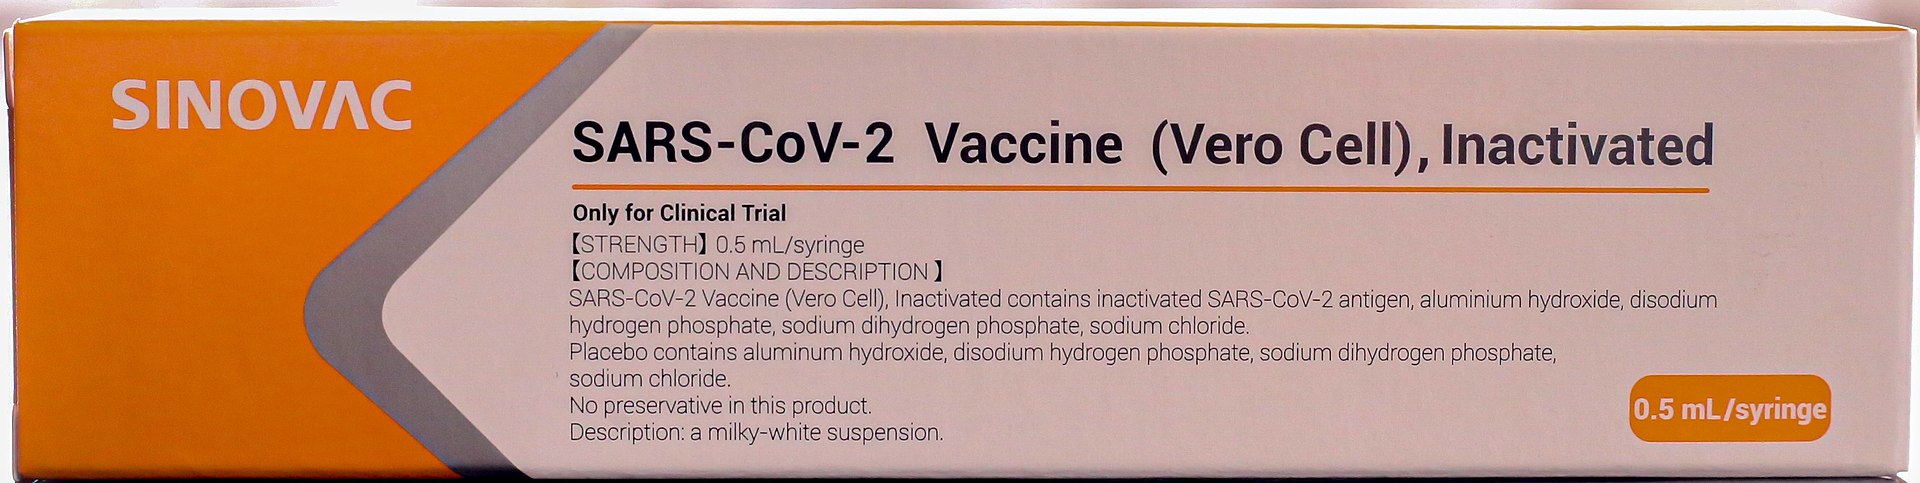 Maklumat mengenai vaksin CoronaVac Covid-19 China